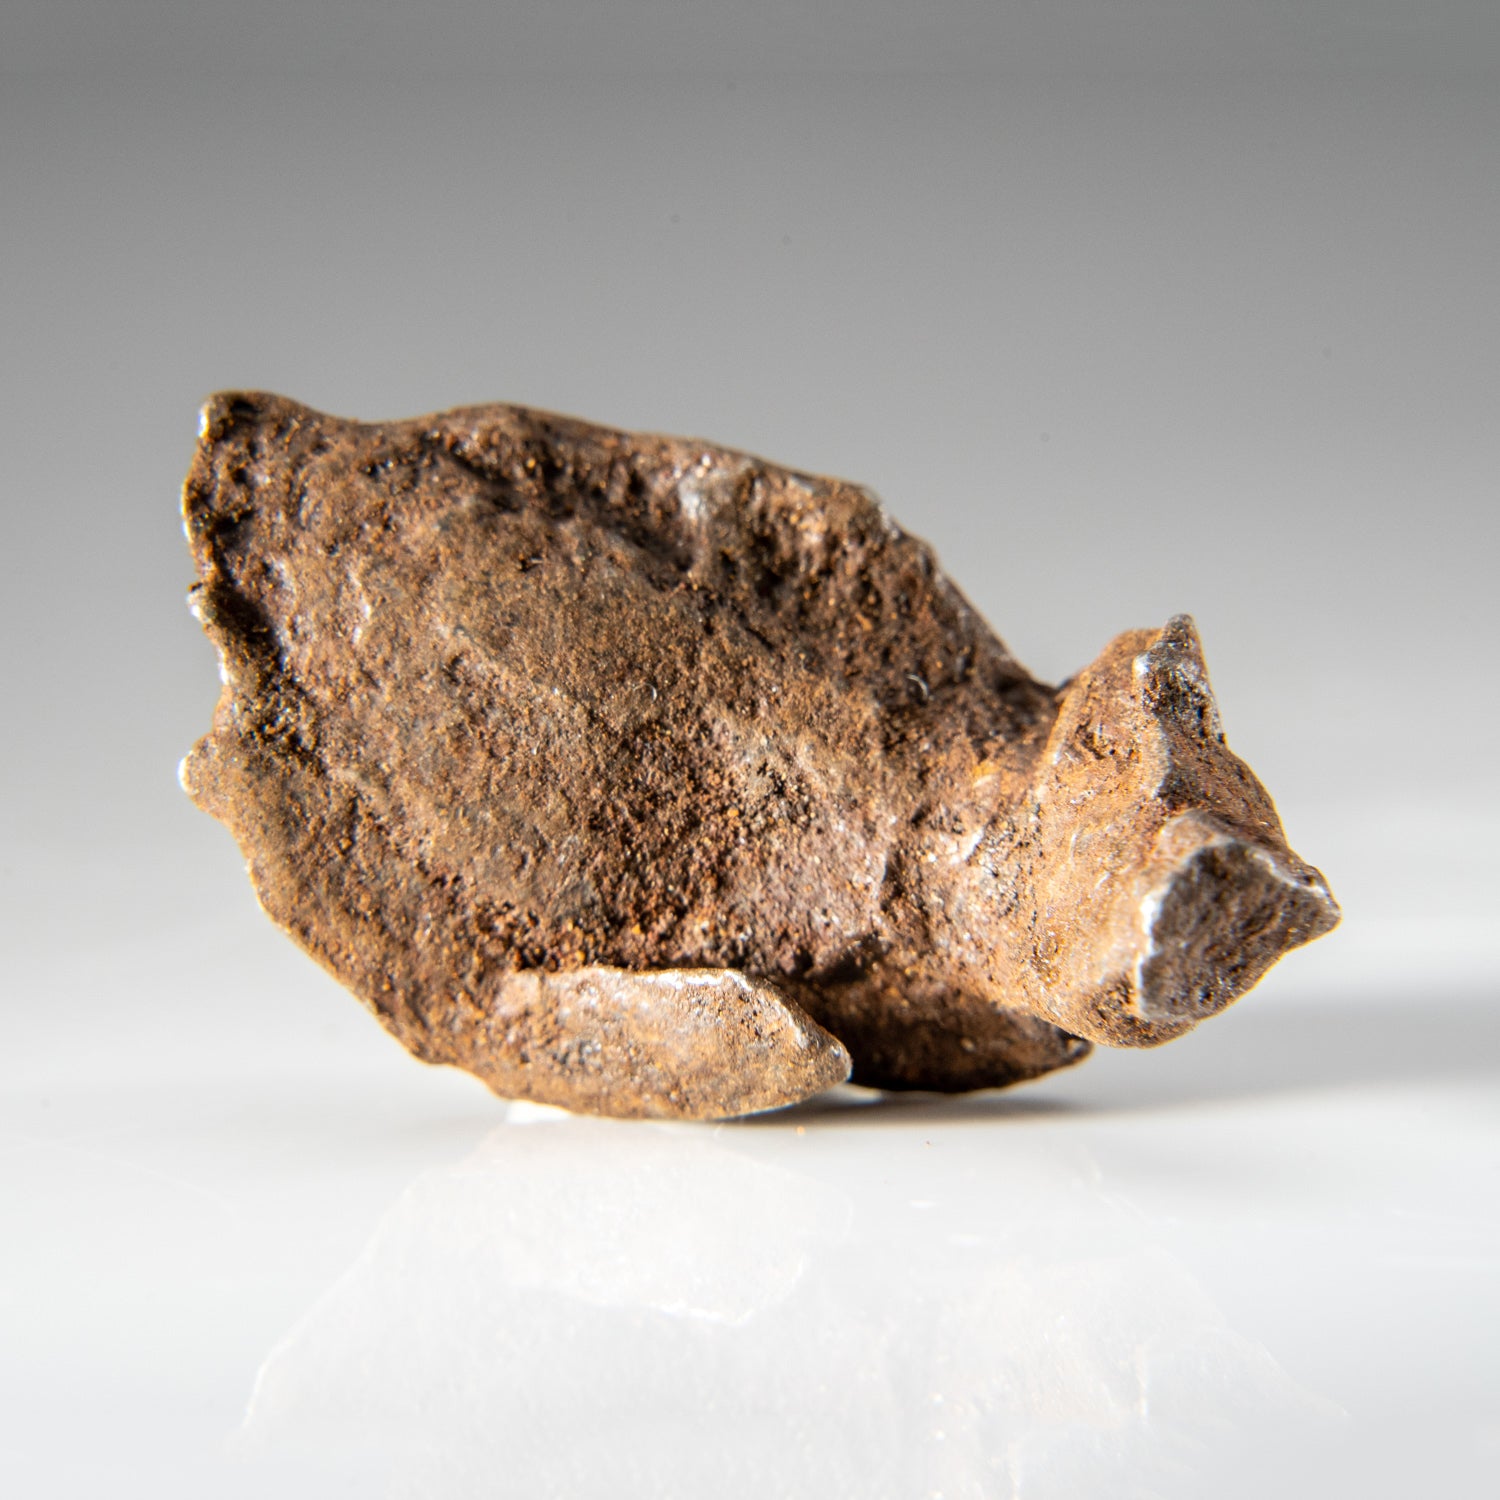 Genuine Gebel Kamil Meteorite from Egypt (23 grams)